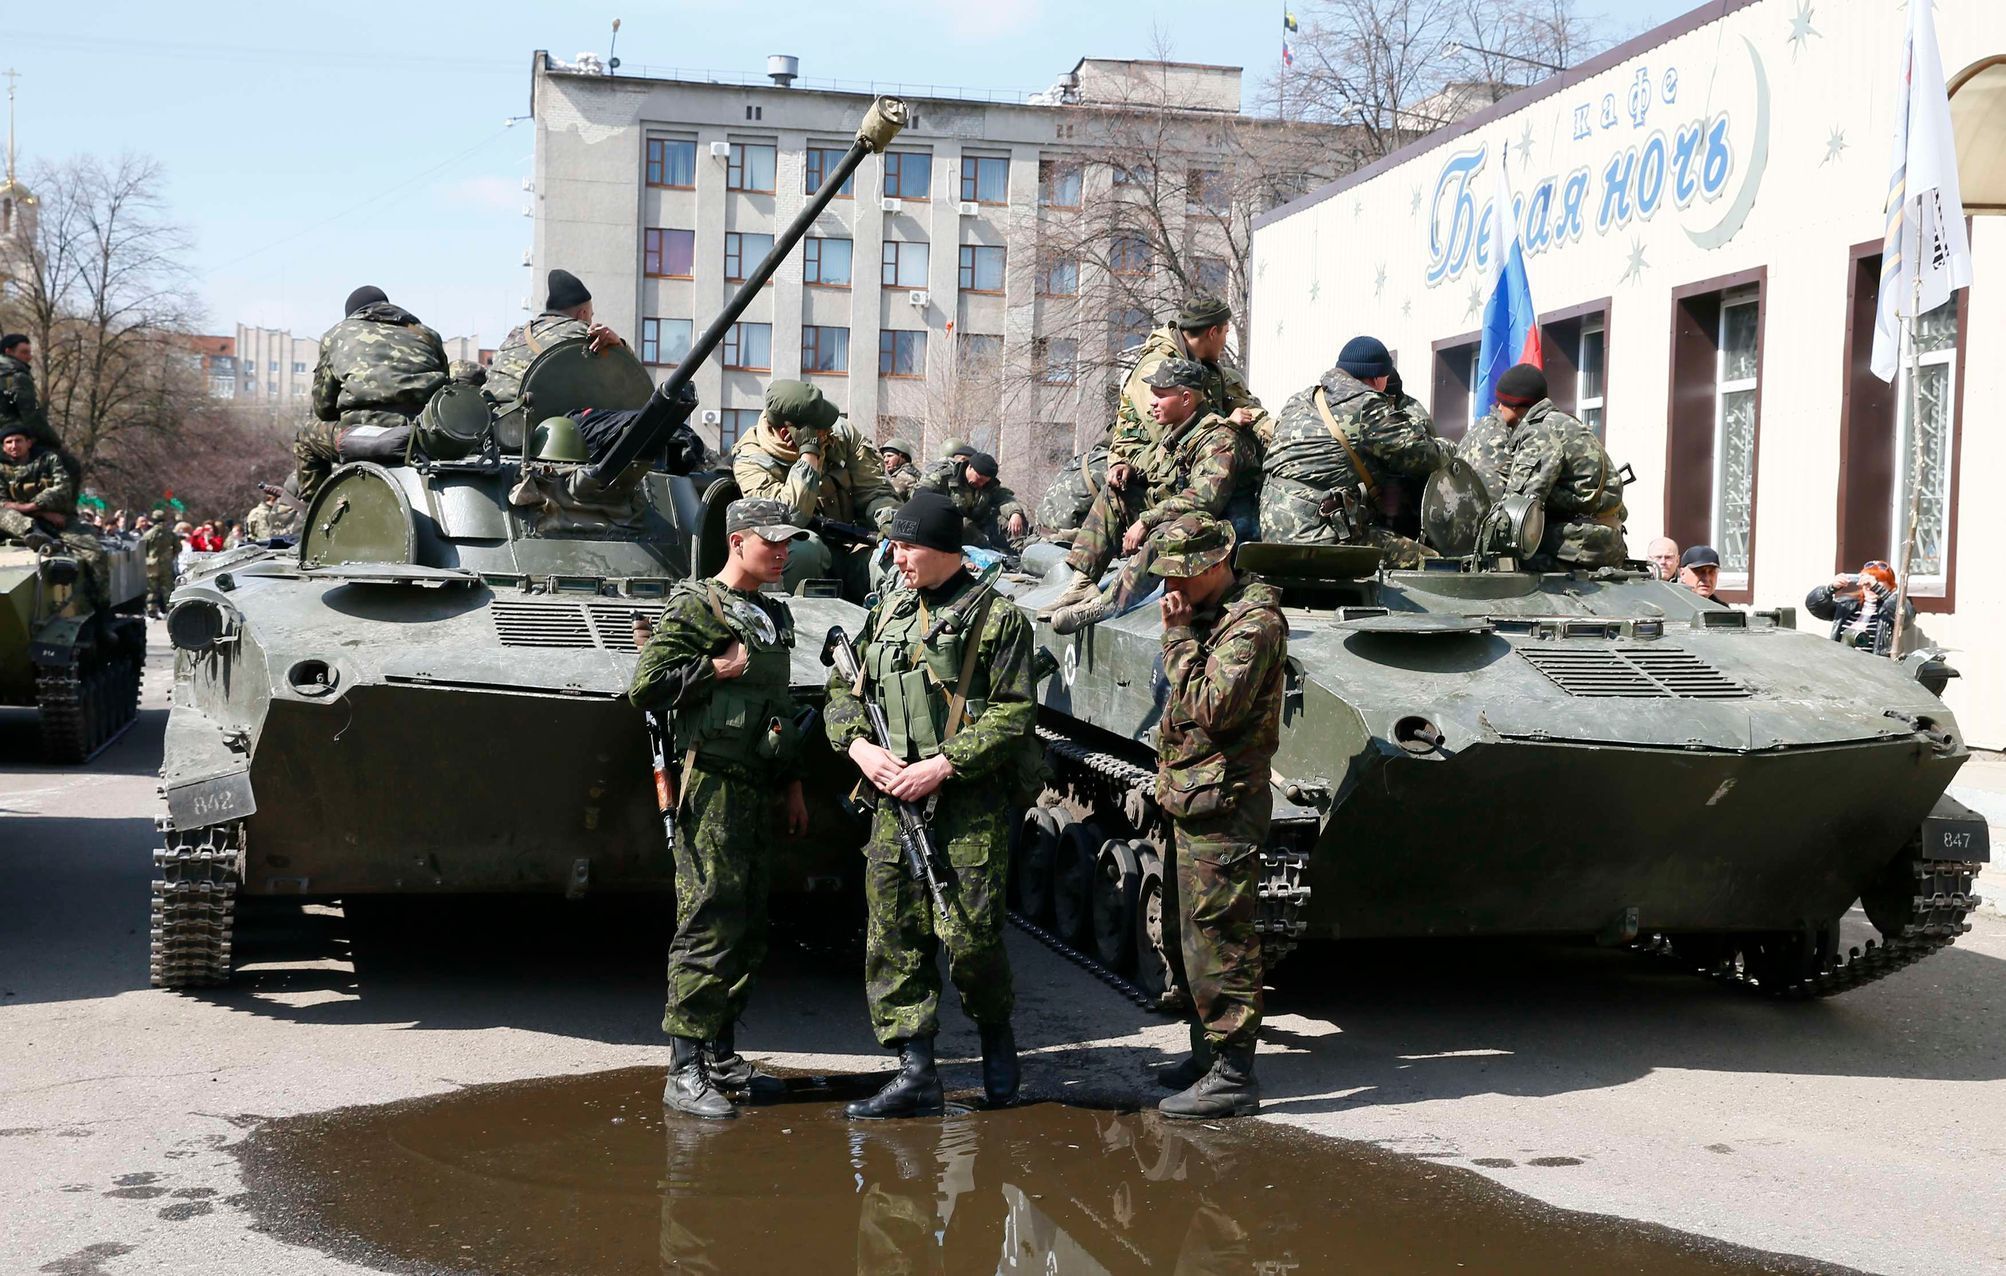 Ozbrojenci ve Slavjansku. Na vozidle je upevněna ruská vlajka.